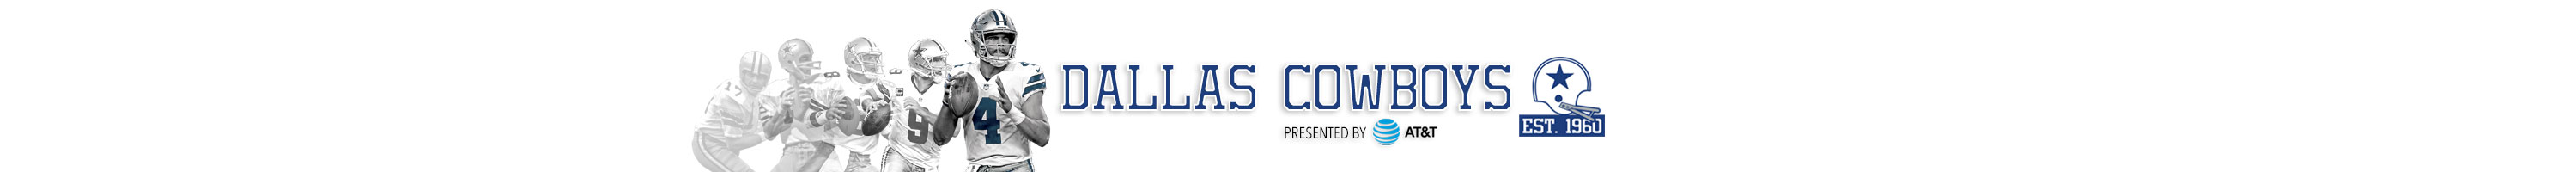 Cowboys Standings Dallas Cowboys Dallascowboys Com